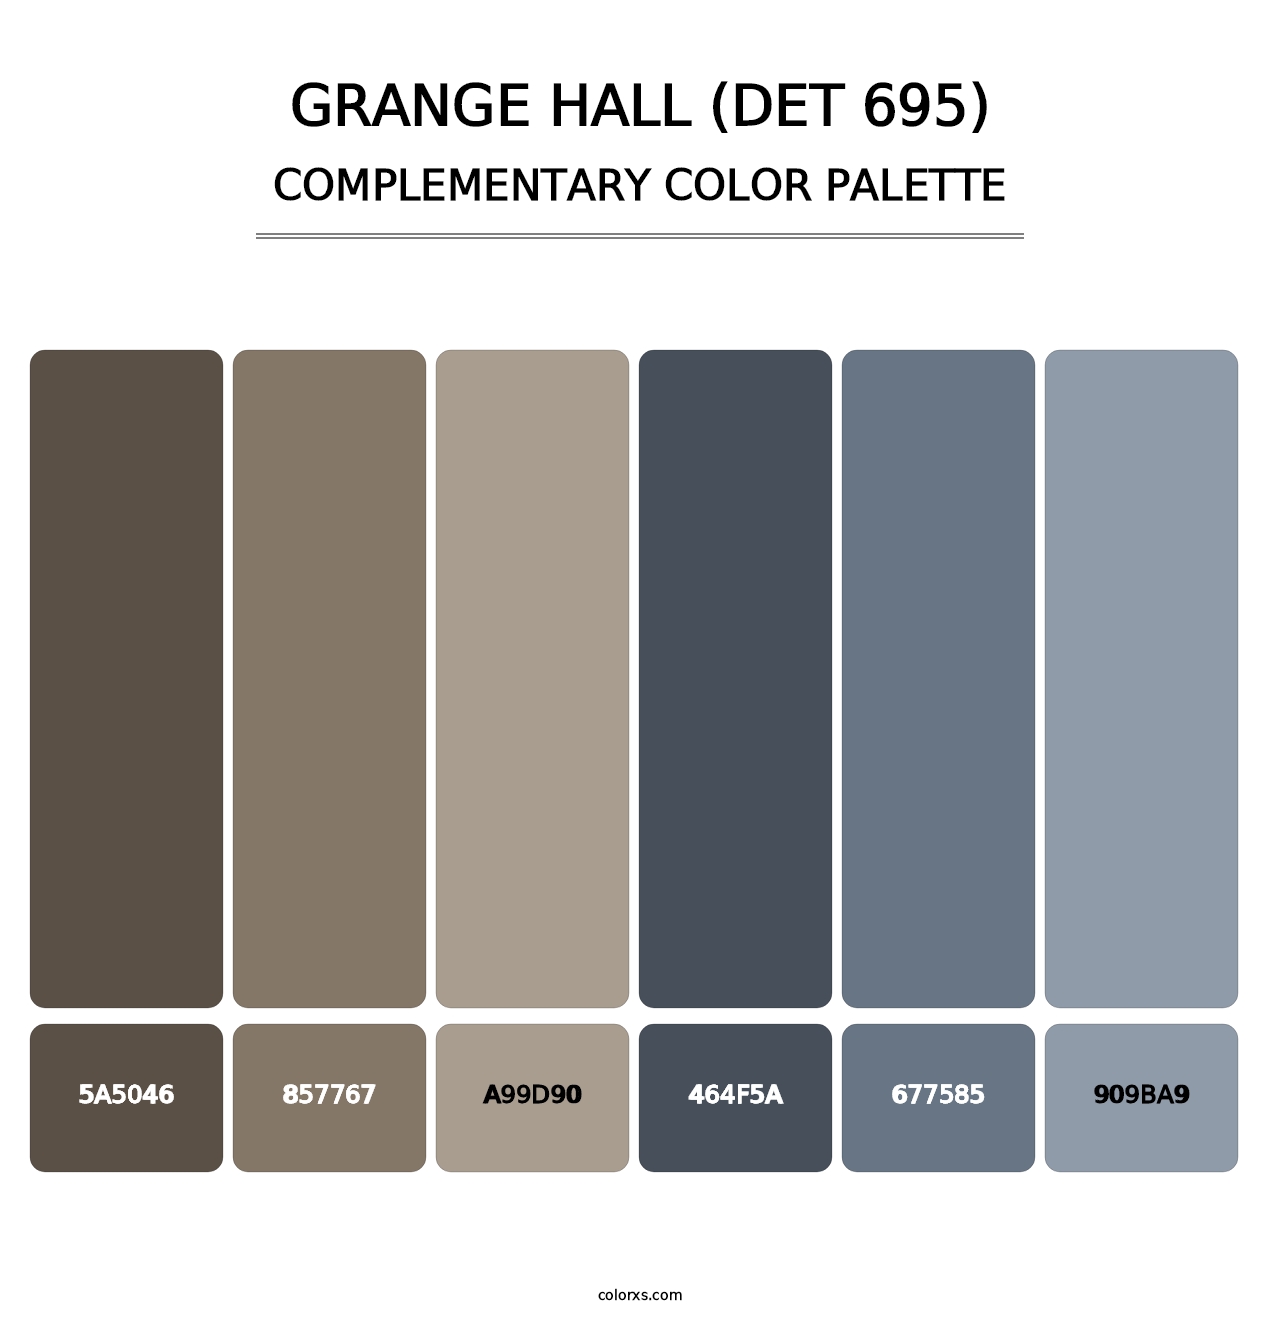 Grange Hall (DET 695) - Complementary Color Palette